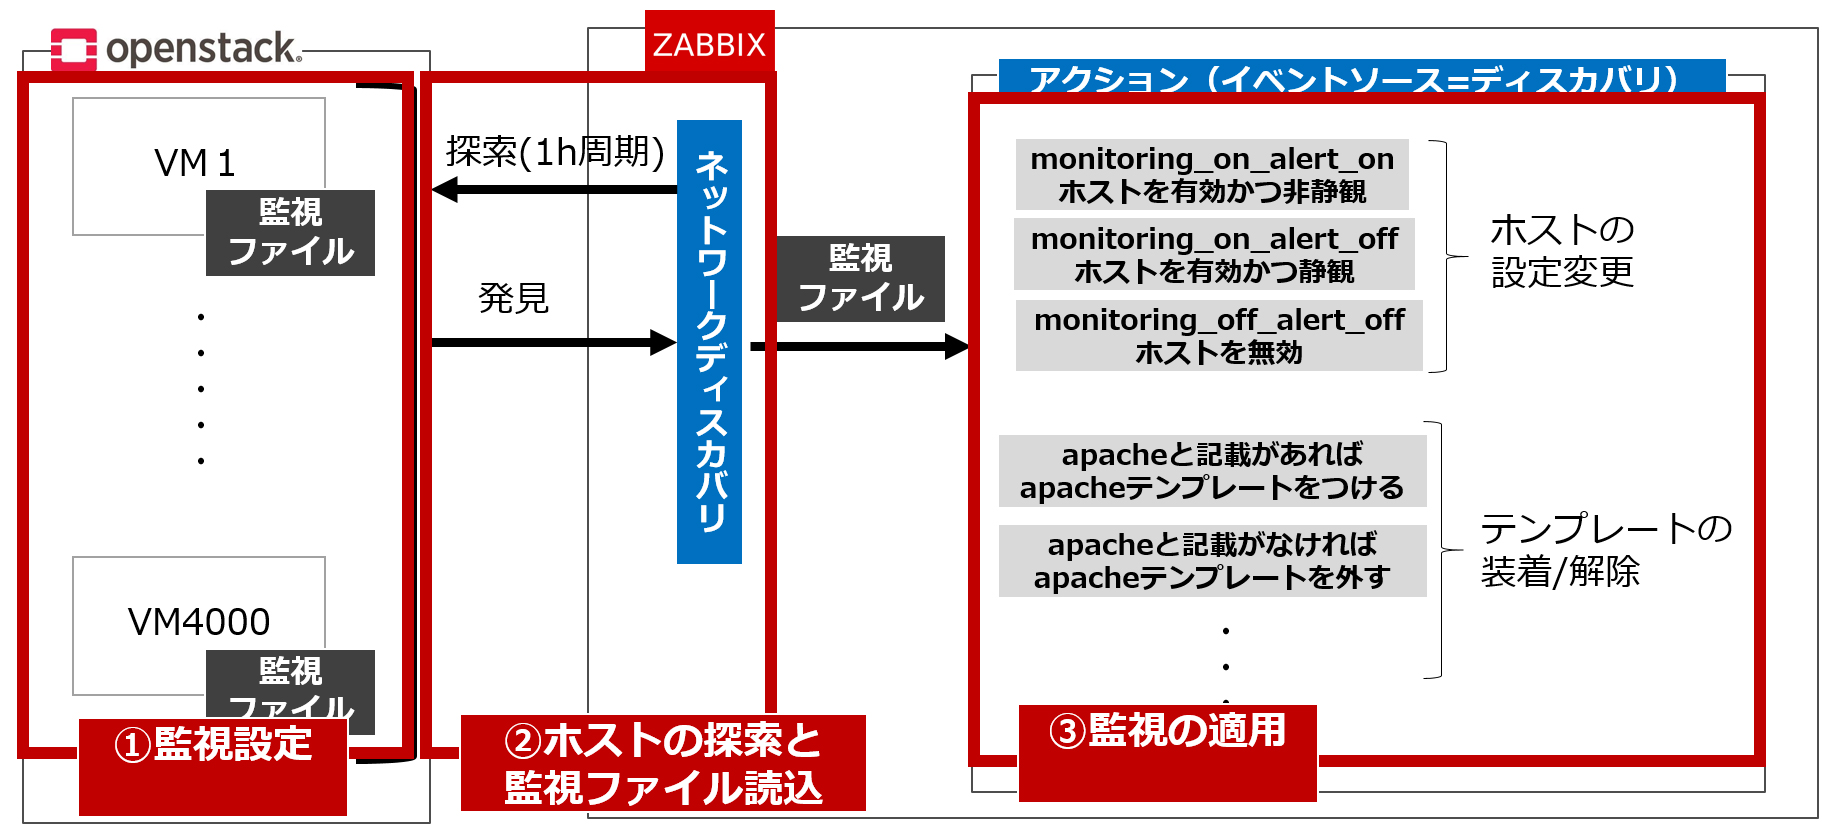 約4000台の仮想マシン基盤を2 3人で監視 Gooでおなじみのnttレゾナントが Zabbix を選んだ理由 Zabbix Conference Japan 18レポート It